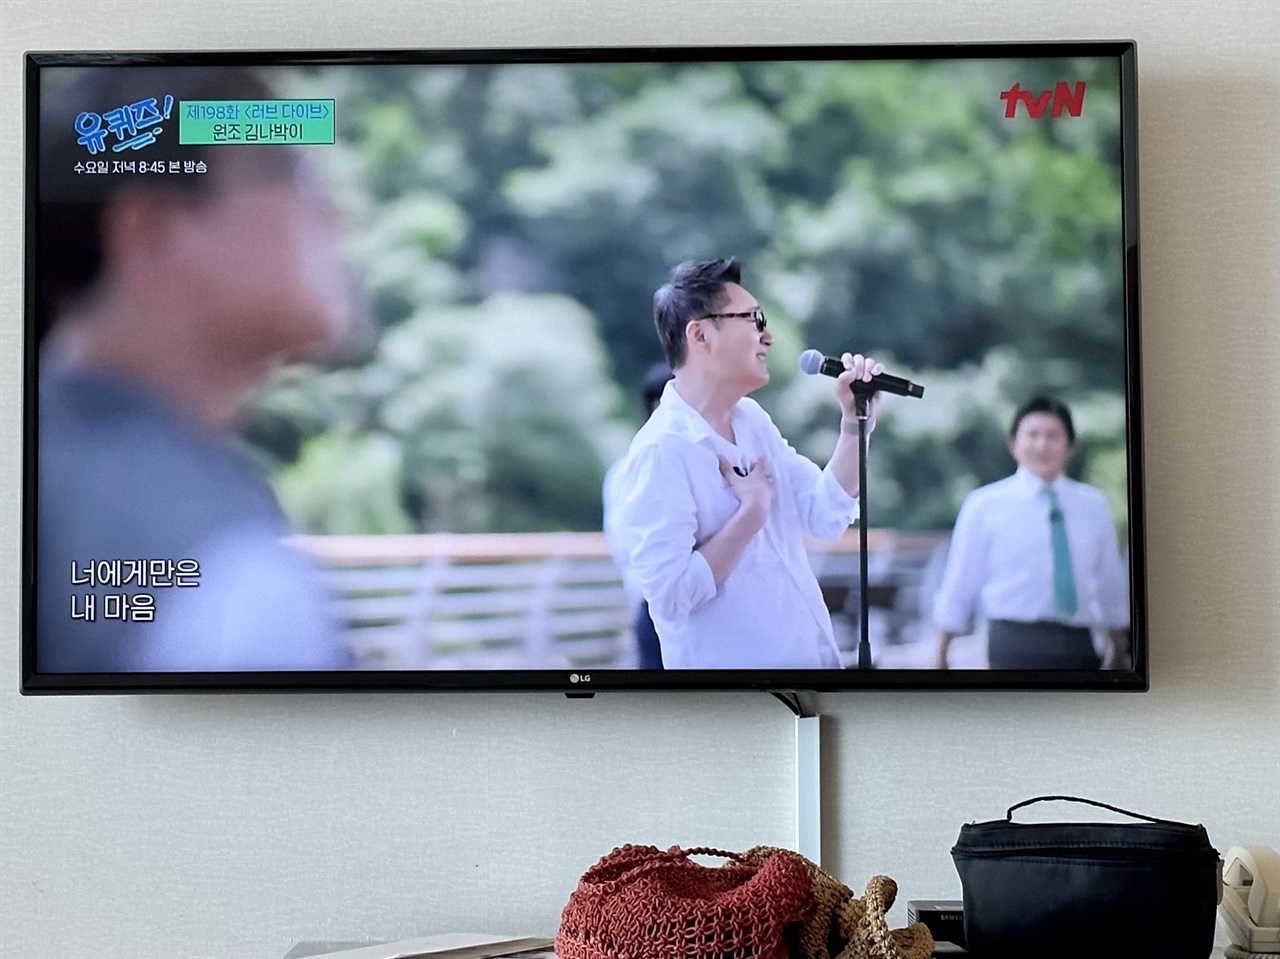 우연히 틀어놓은 TV에서 마침 20세기 원조 김나박이 출연해 그 시절 노래를 부르고 있었다. 